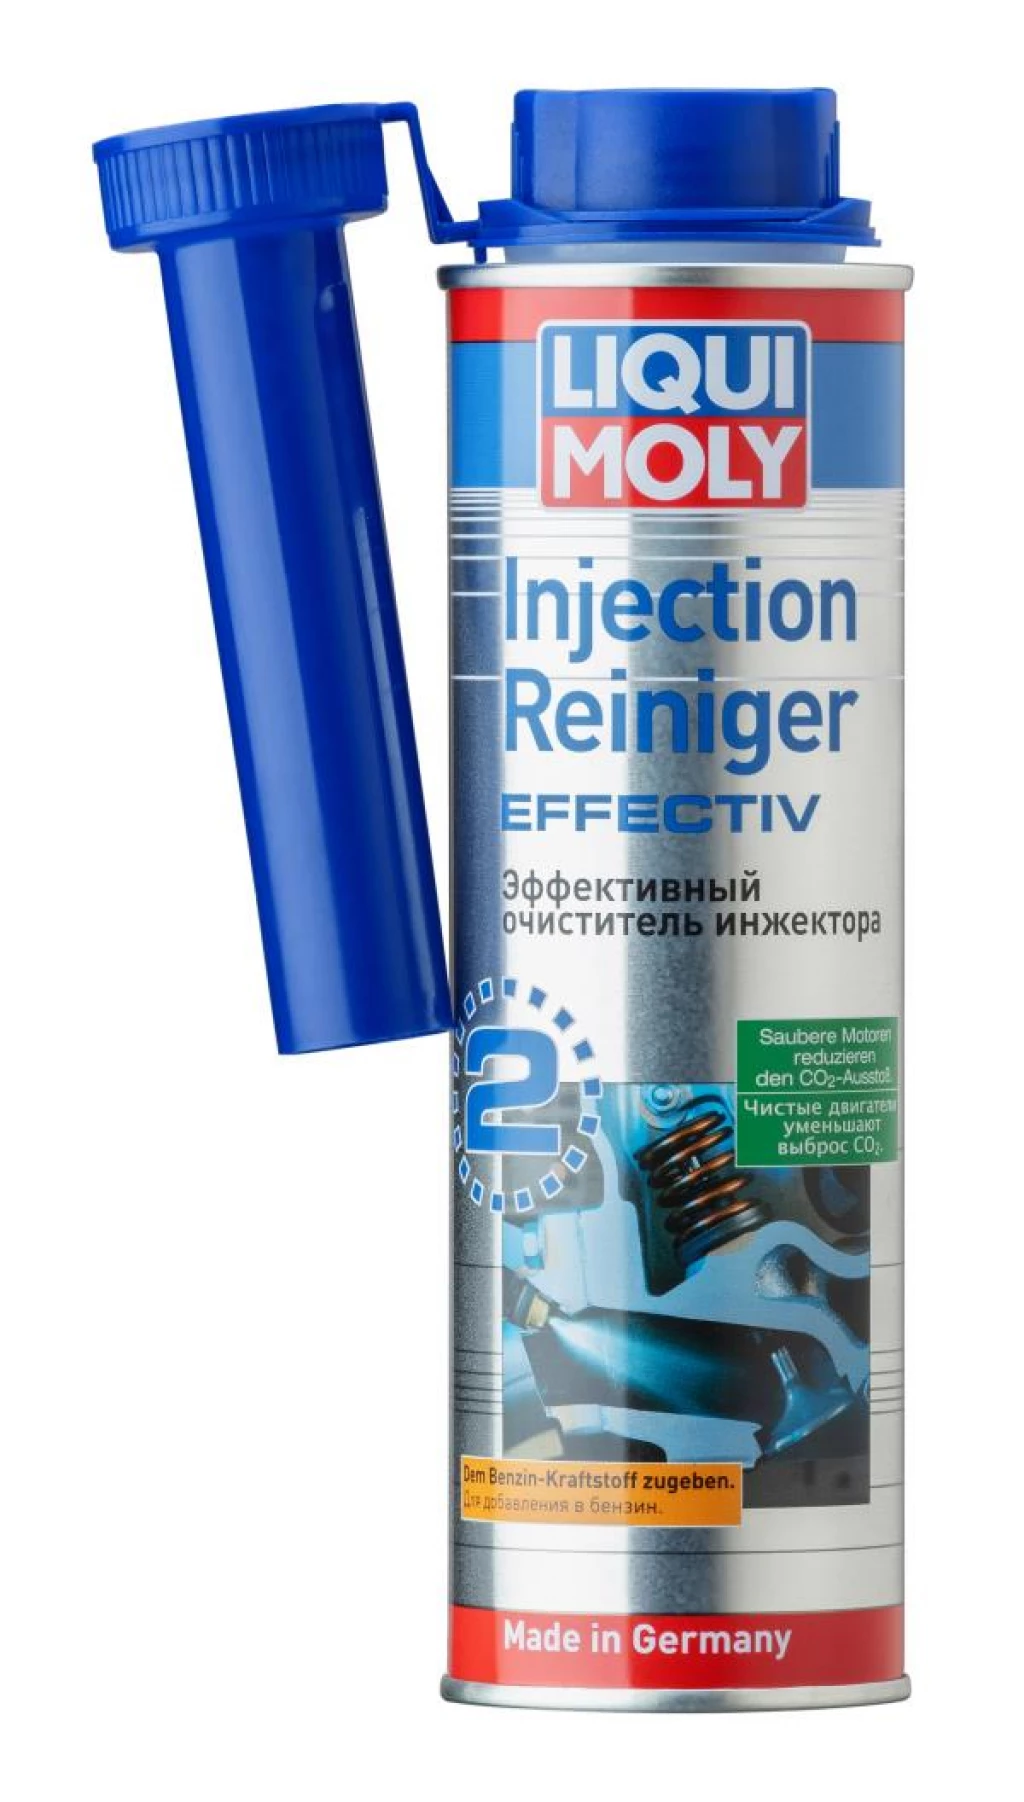 Очиститель инжекторов Liqui Moly Injection Reiniger Effectiv 300 мл